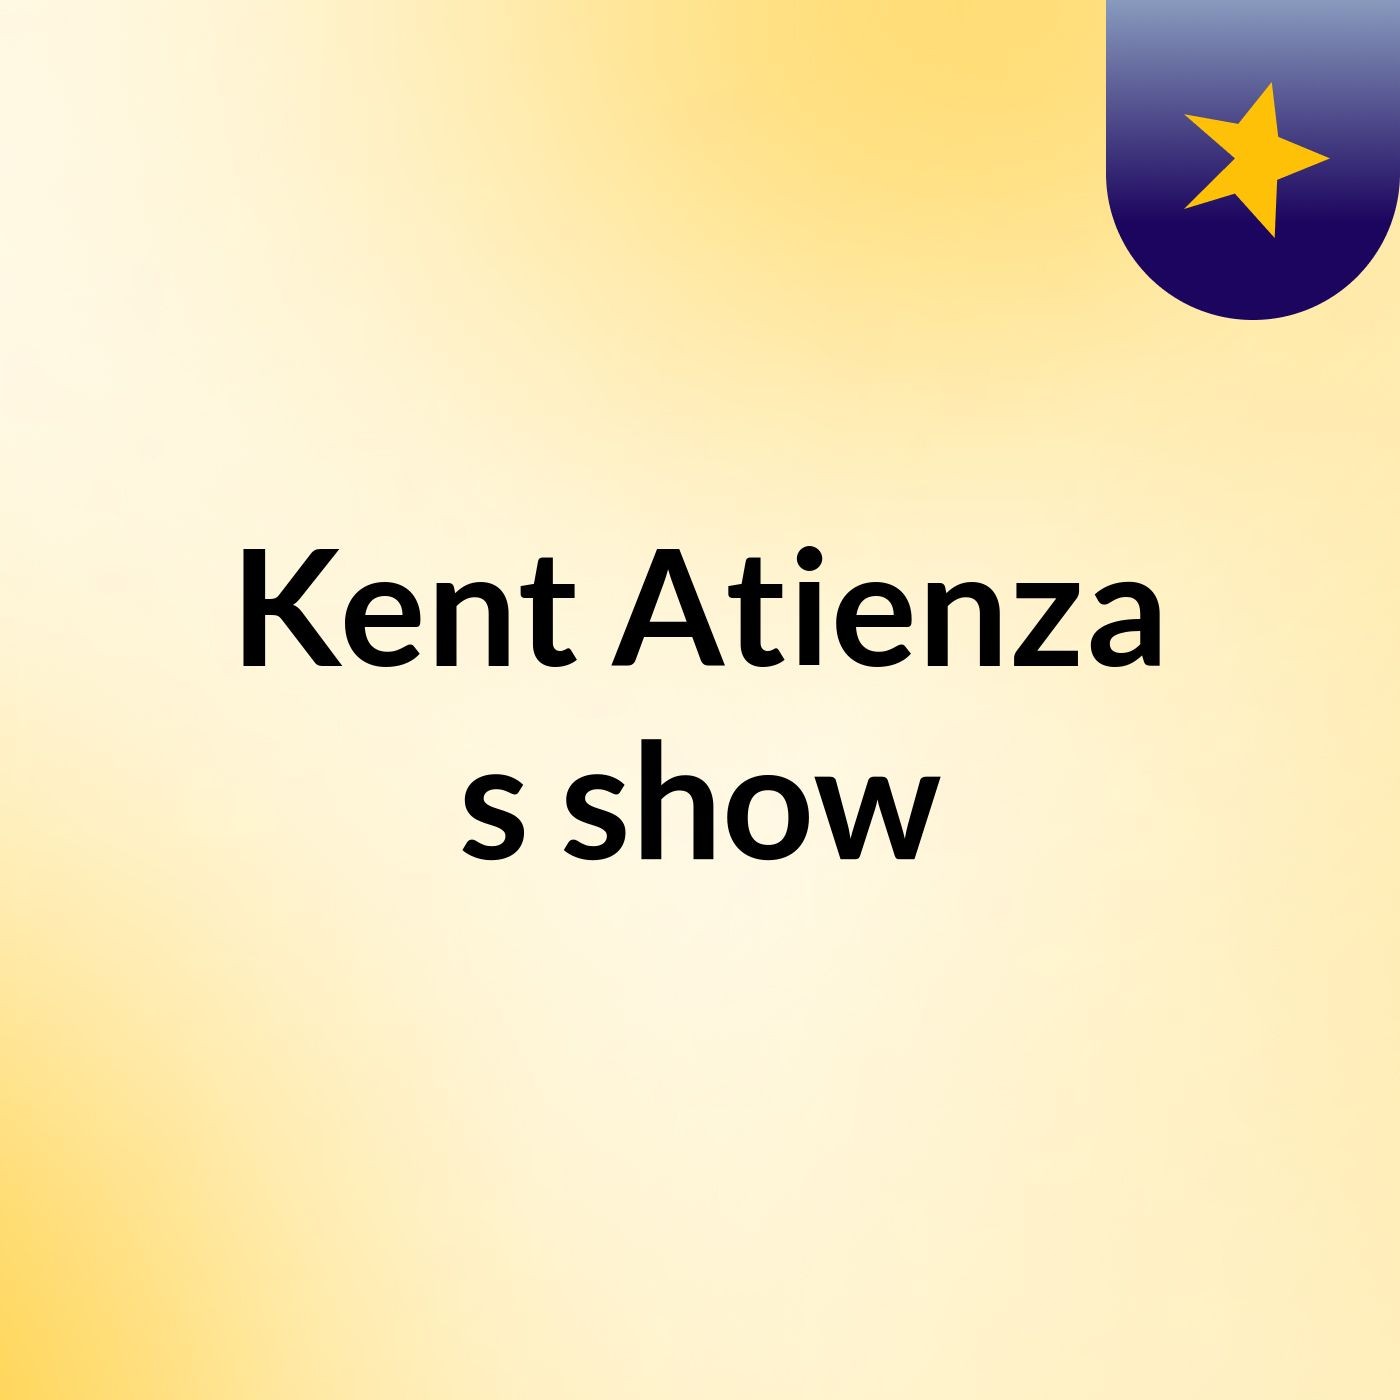 Kent Atienza's show